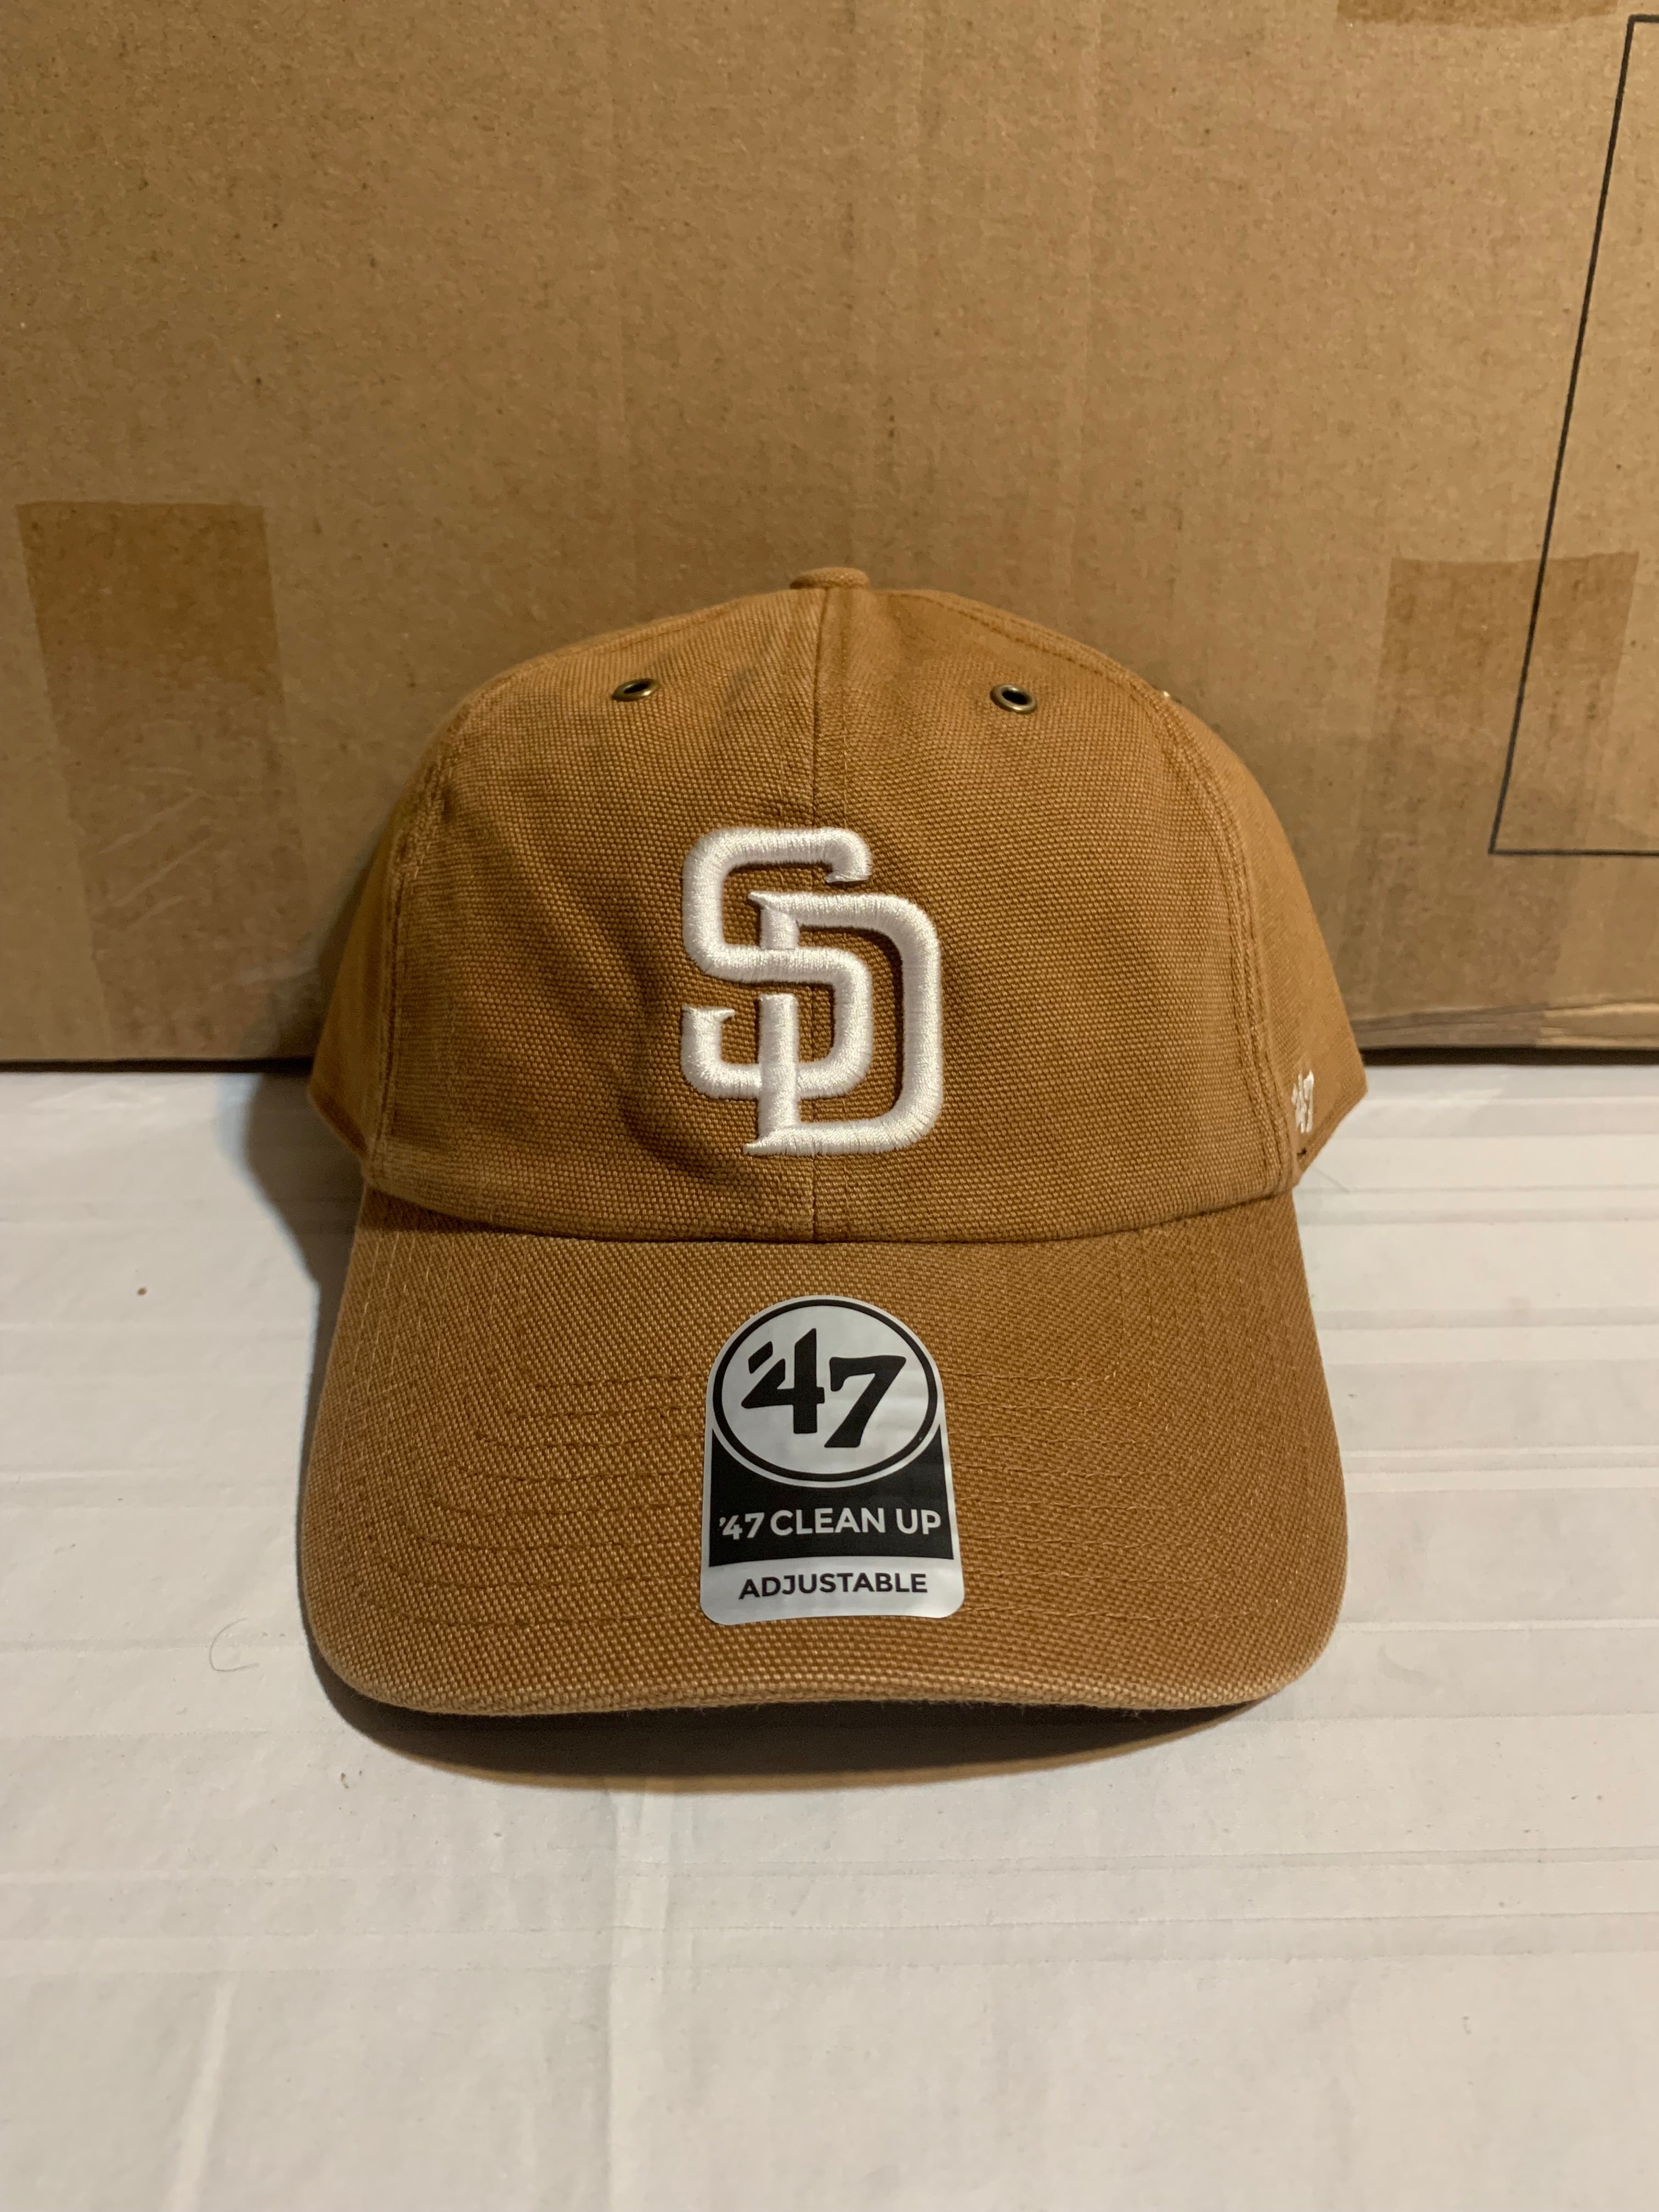 Men's San Francisco Giants Carhartt x '47 Brown MVP Adjustable Hat